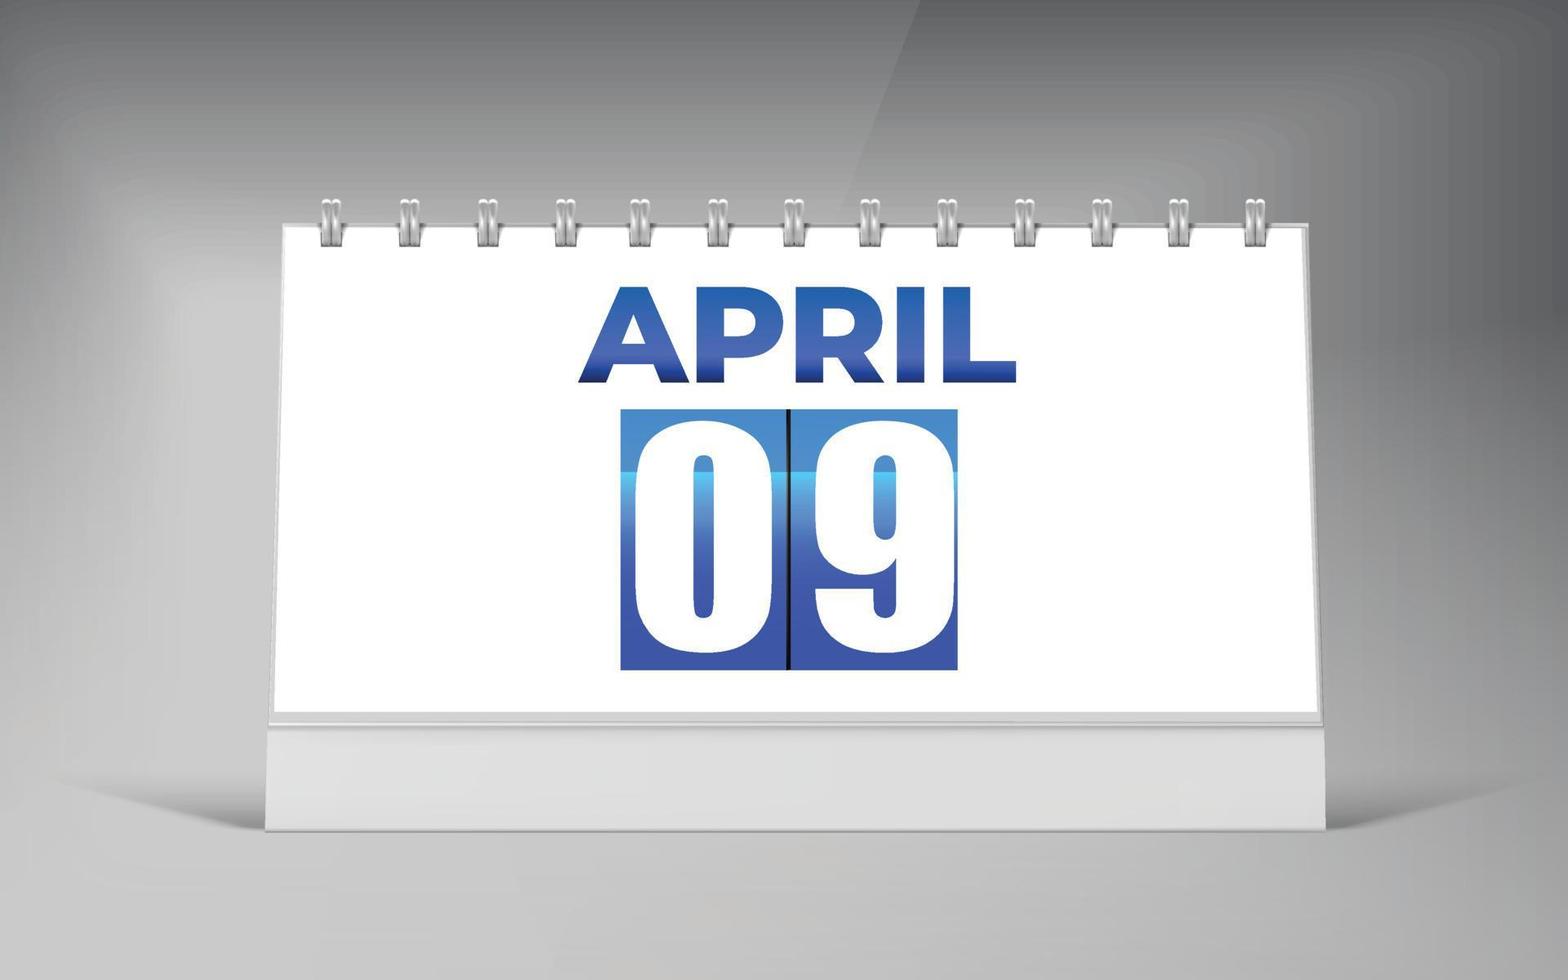 April 09, Desk Calendar Design Template. Single Date Calendar Design. vector